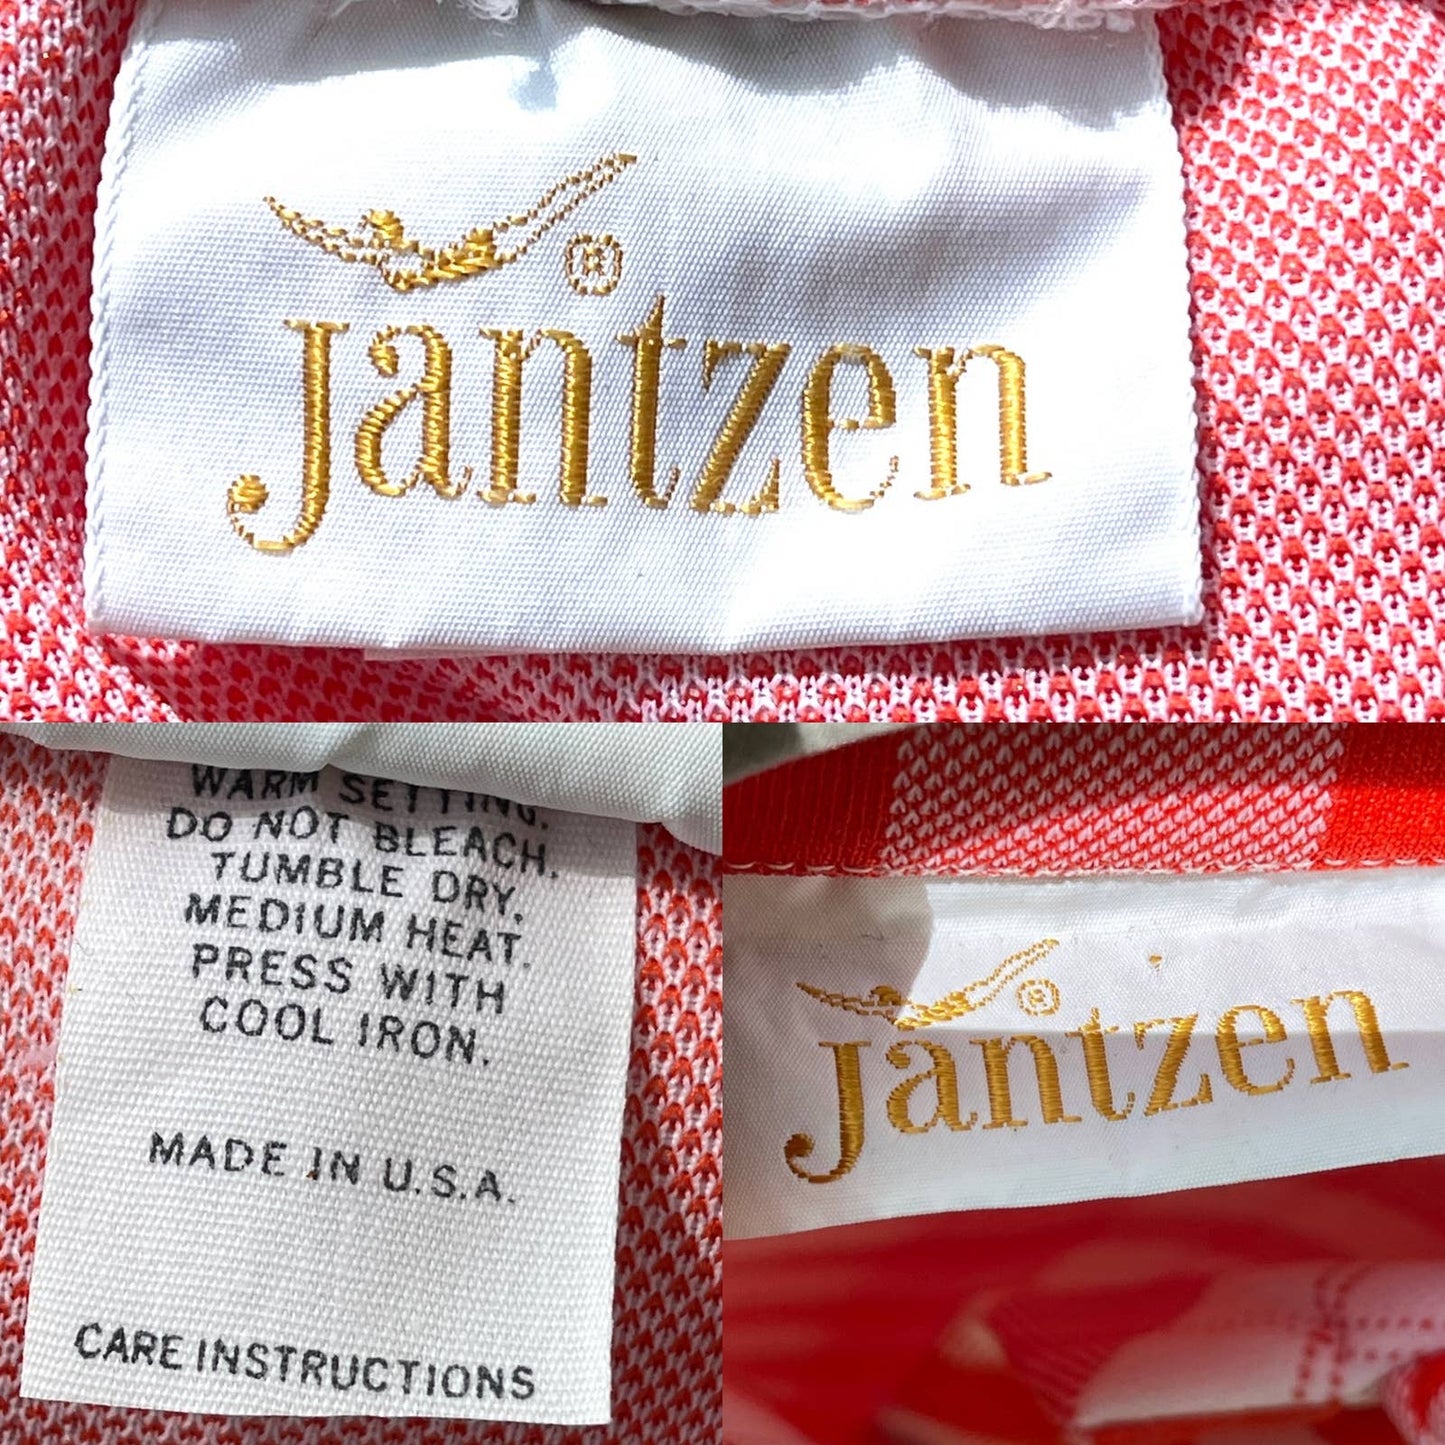 Vintage 70s Orange Plaid Maxi Skirt Set Pockets Anchor Buttons Jantzen Size M